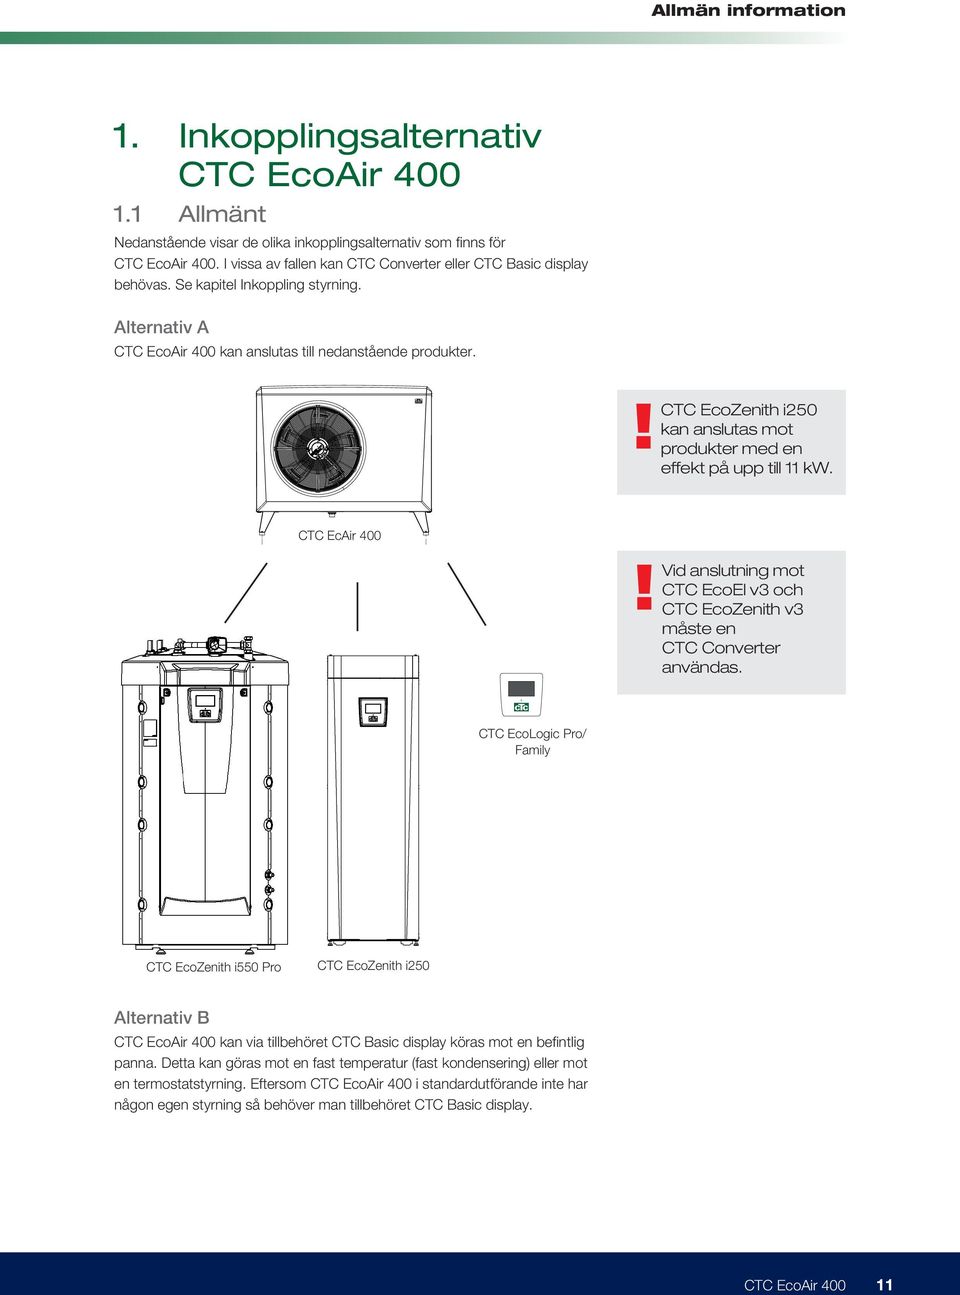 C Basic Display CTC EcAir 400 1285 CTC EcoLogic Pro 551! Vid anslutning mot CTC EcoEl v3 och CTC EcoZenith v3 måste en CTC Converter användas.